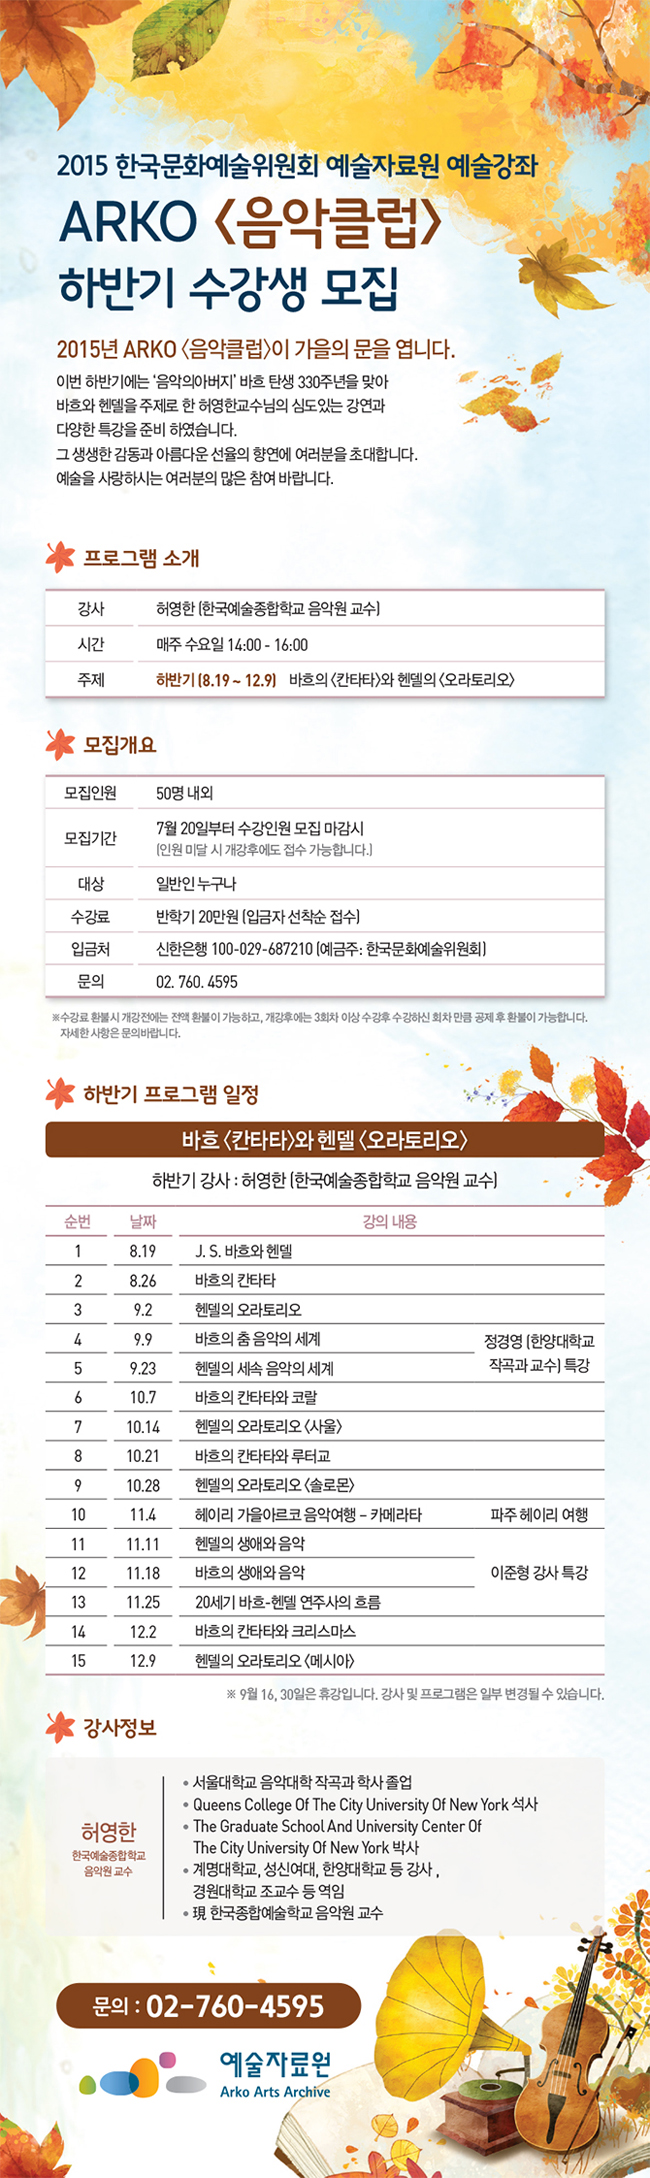 2015 한국문화예술위원회 예술자료원 예술강좌 ARKO <음악클럽> 가을학기 수강생 모집